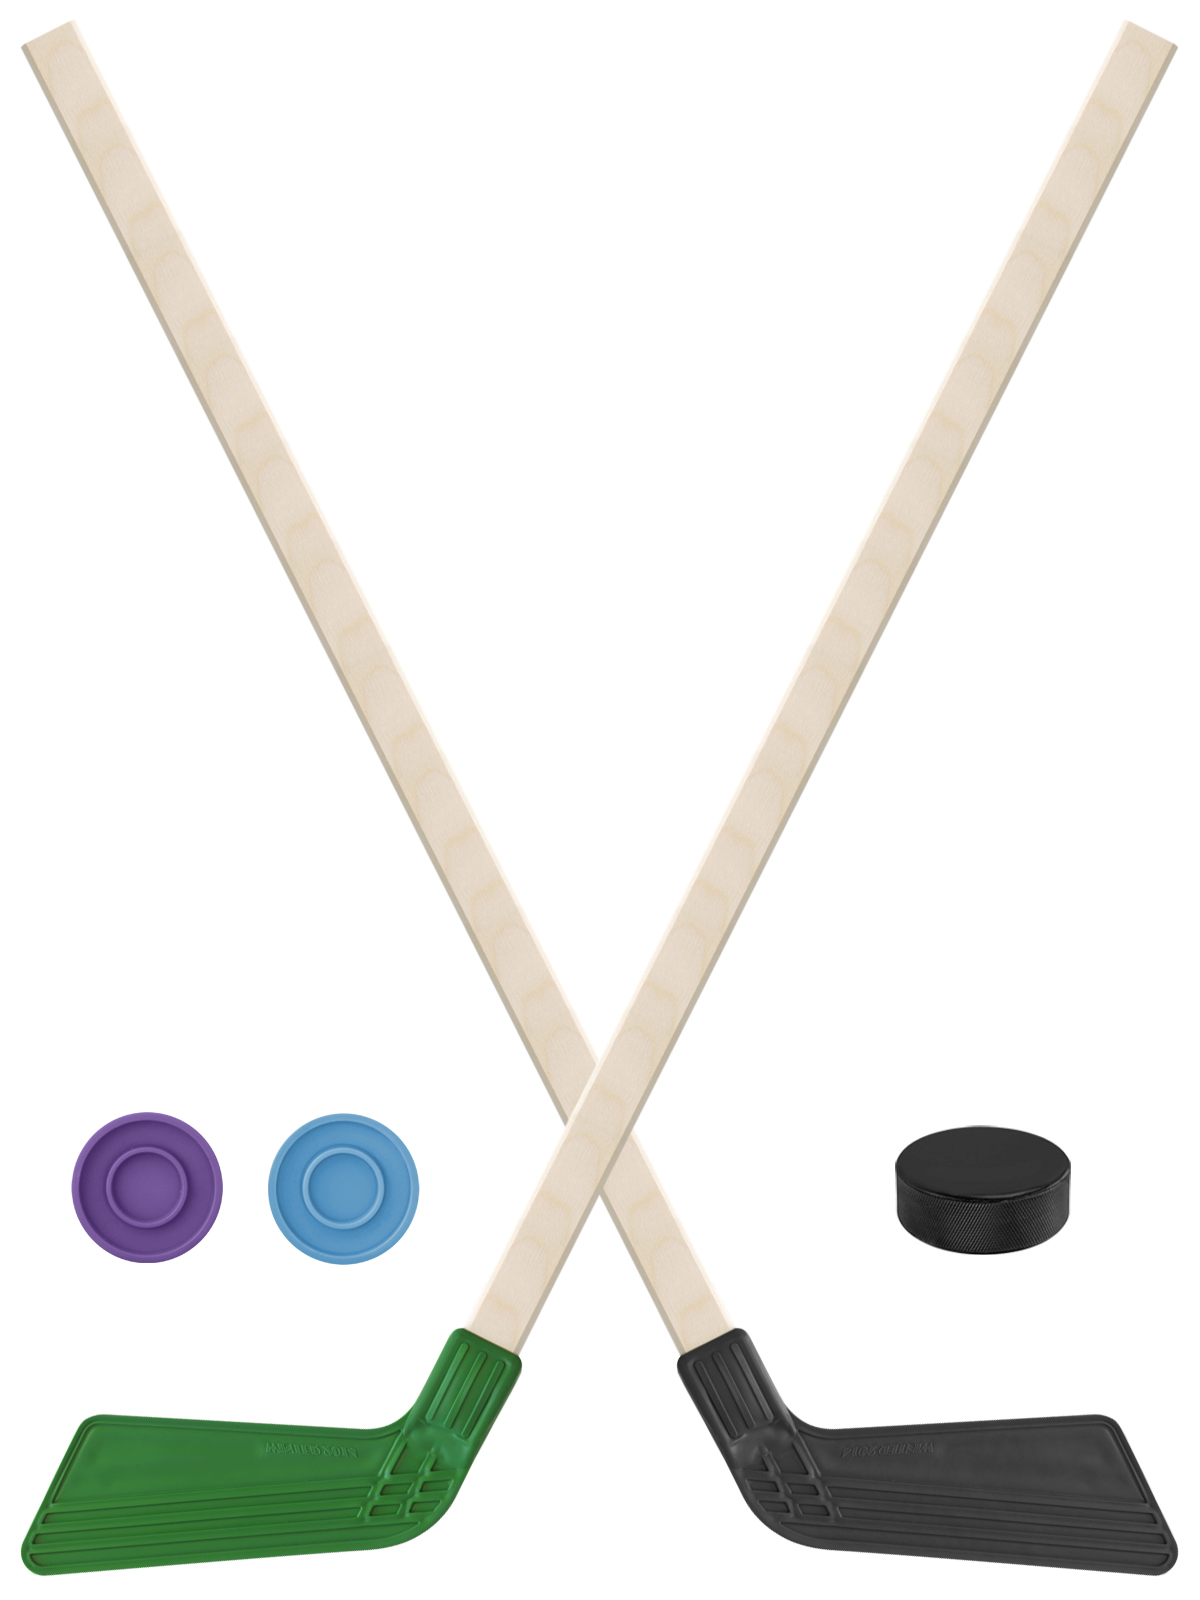 Детский хоккейный набор Задира-плюс Клюшка хоккейная 80см 2шт(зел,чёрн)+2шайбы+Шайба 60 мм детский хоккейный набор задира плюс клюшка хоккейная 2шт син чёрн 2шайбы шайба 75 мм